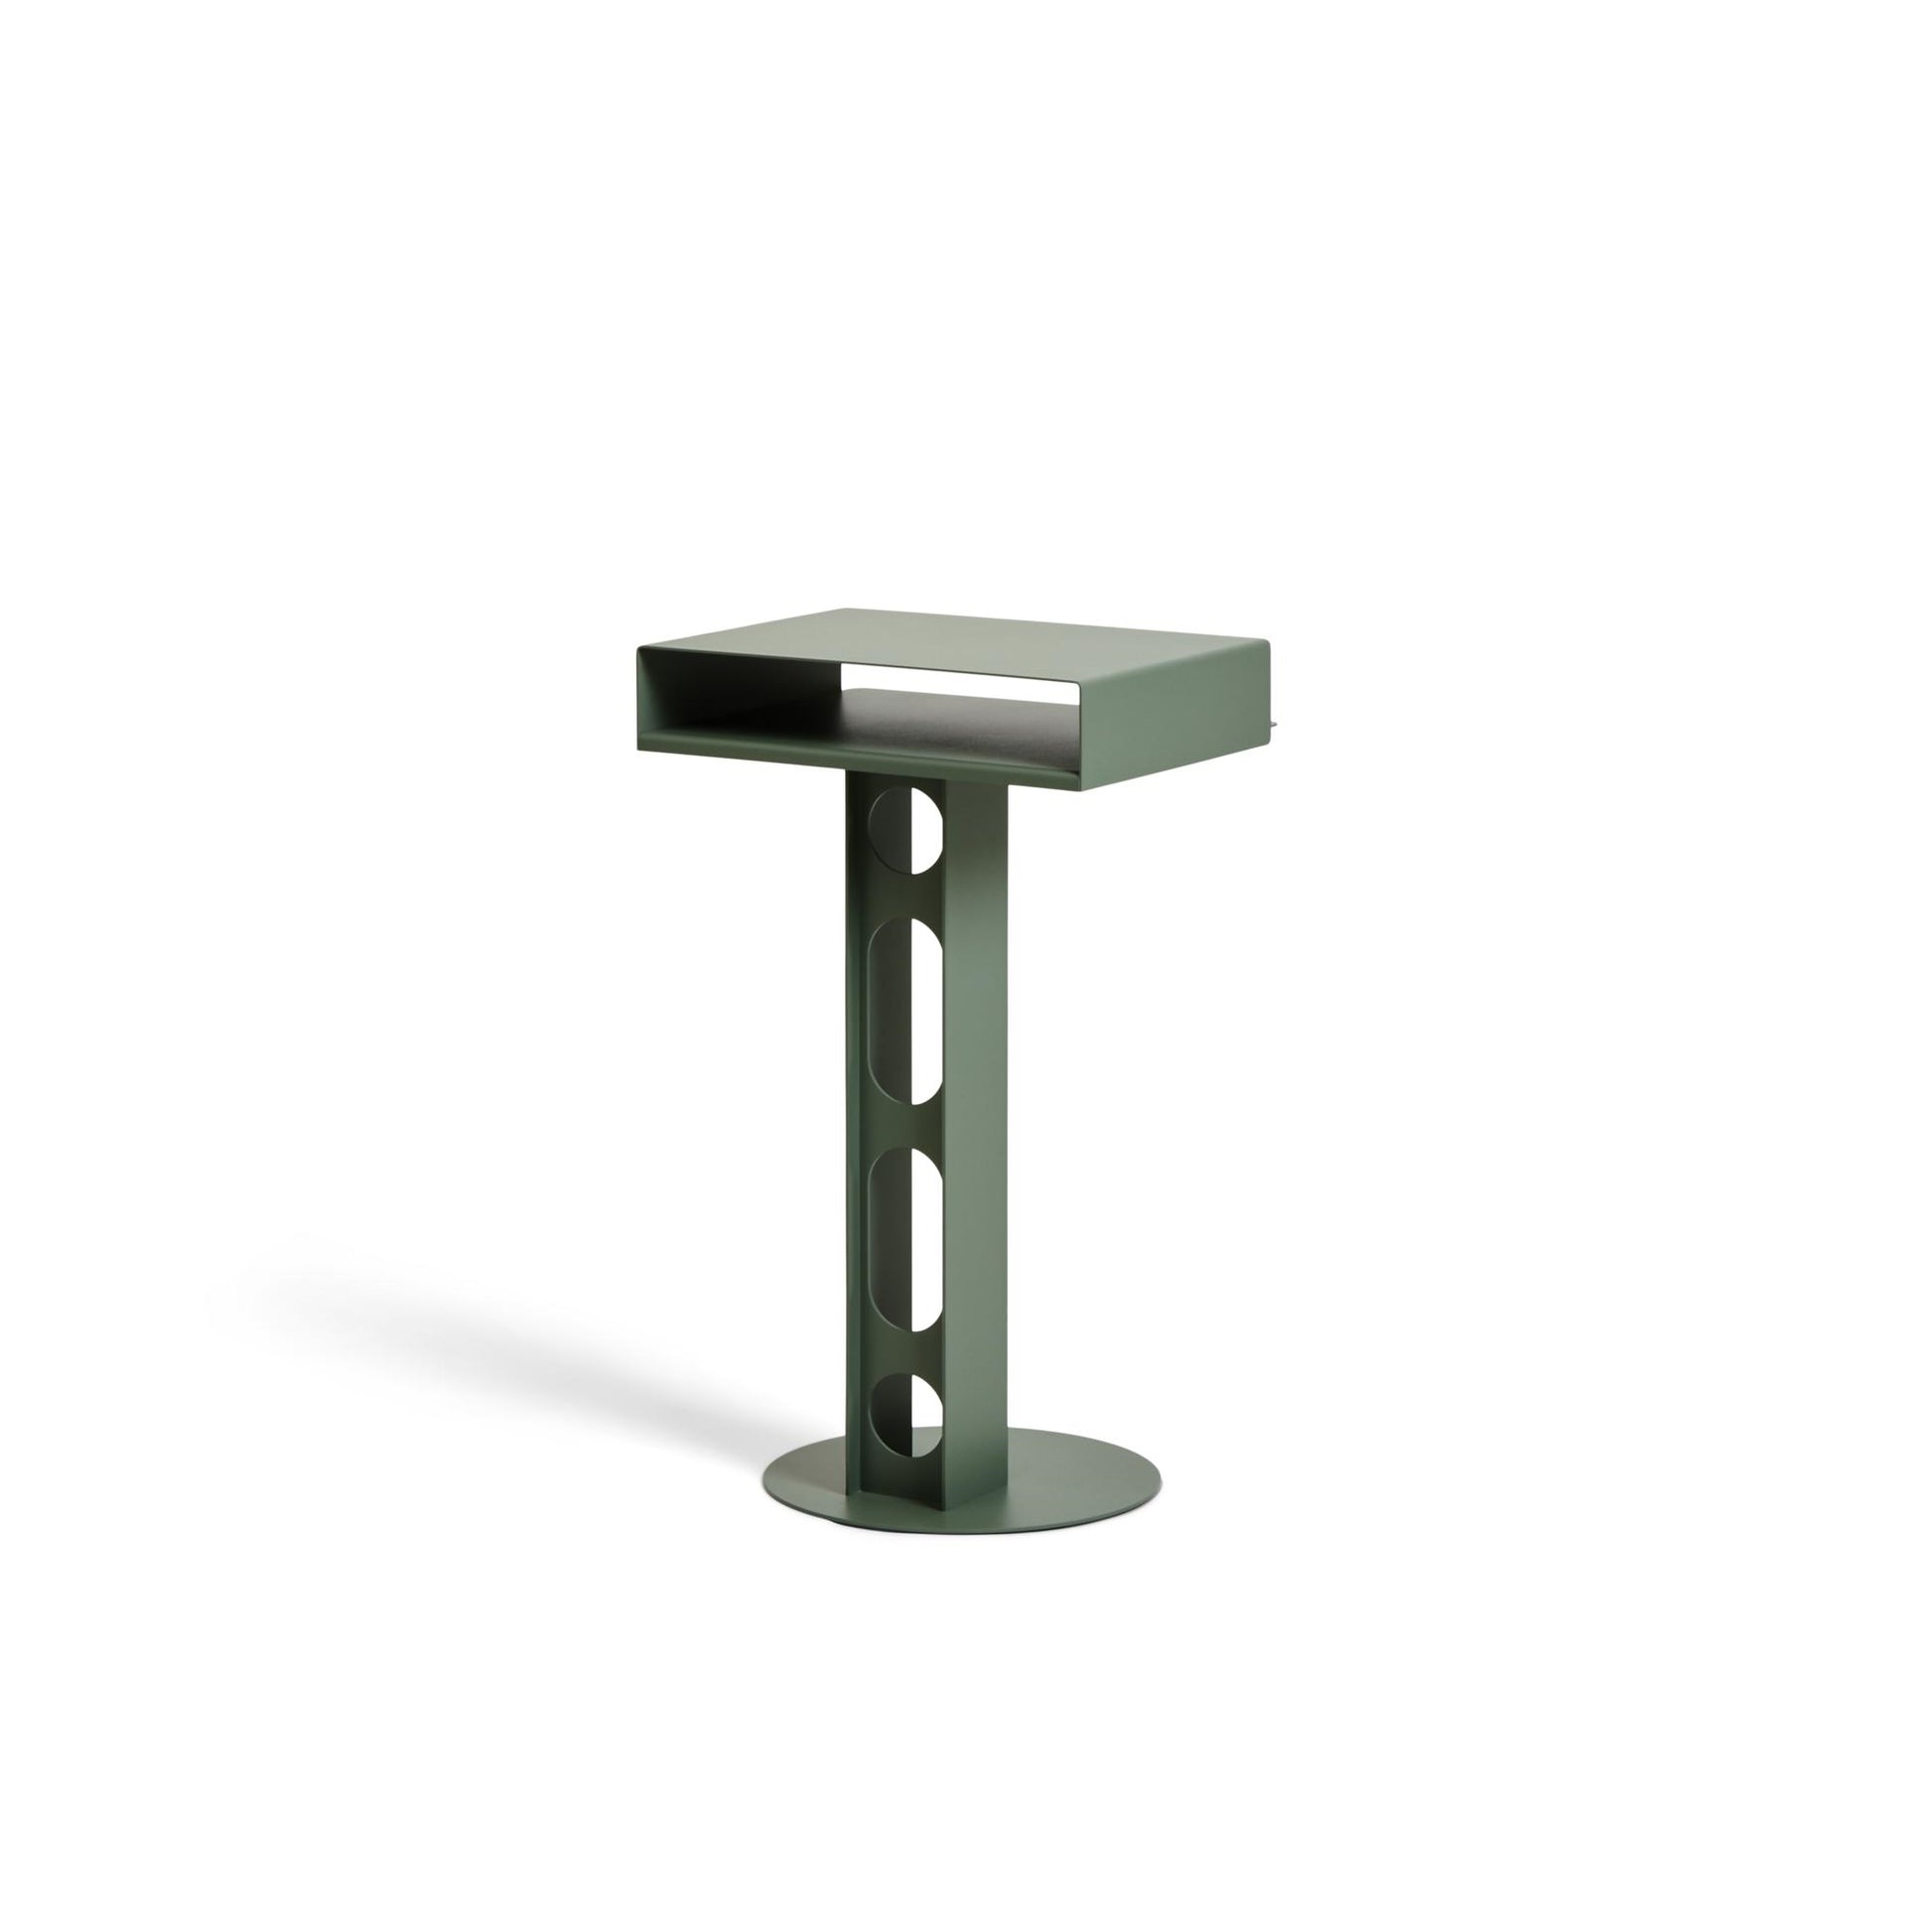 Sidekick Side Table by Pedestal #Mossy Green